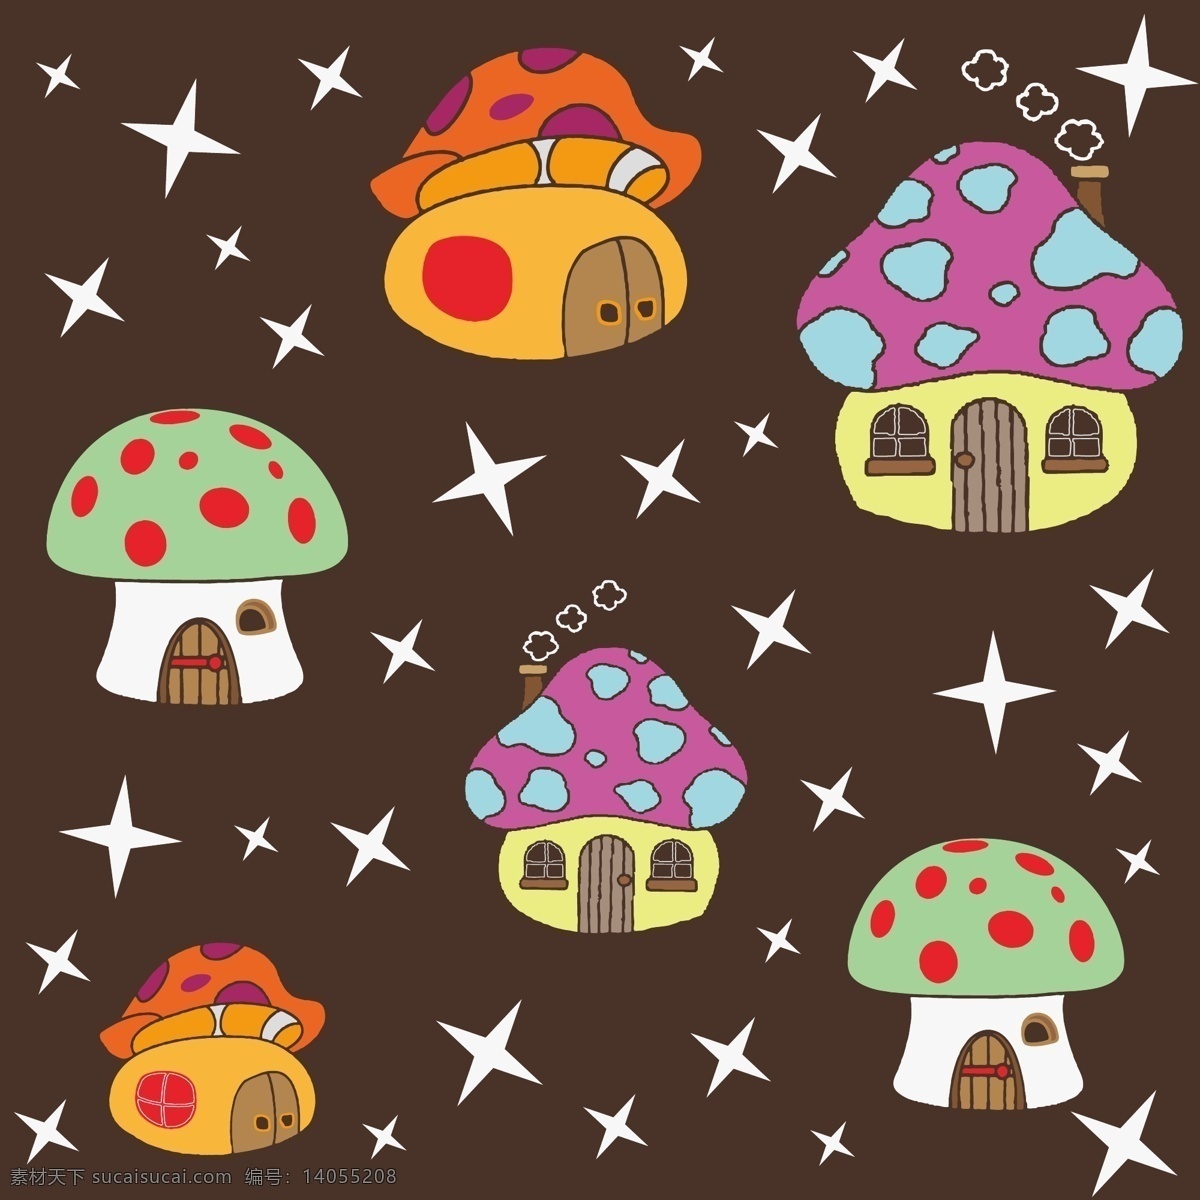 矢量 蘑菇 房子 动画 背景 蘑菇房子 花纹 花朵 欧式 背景花纹 底纹边框 背景底纹